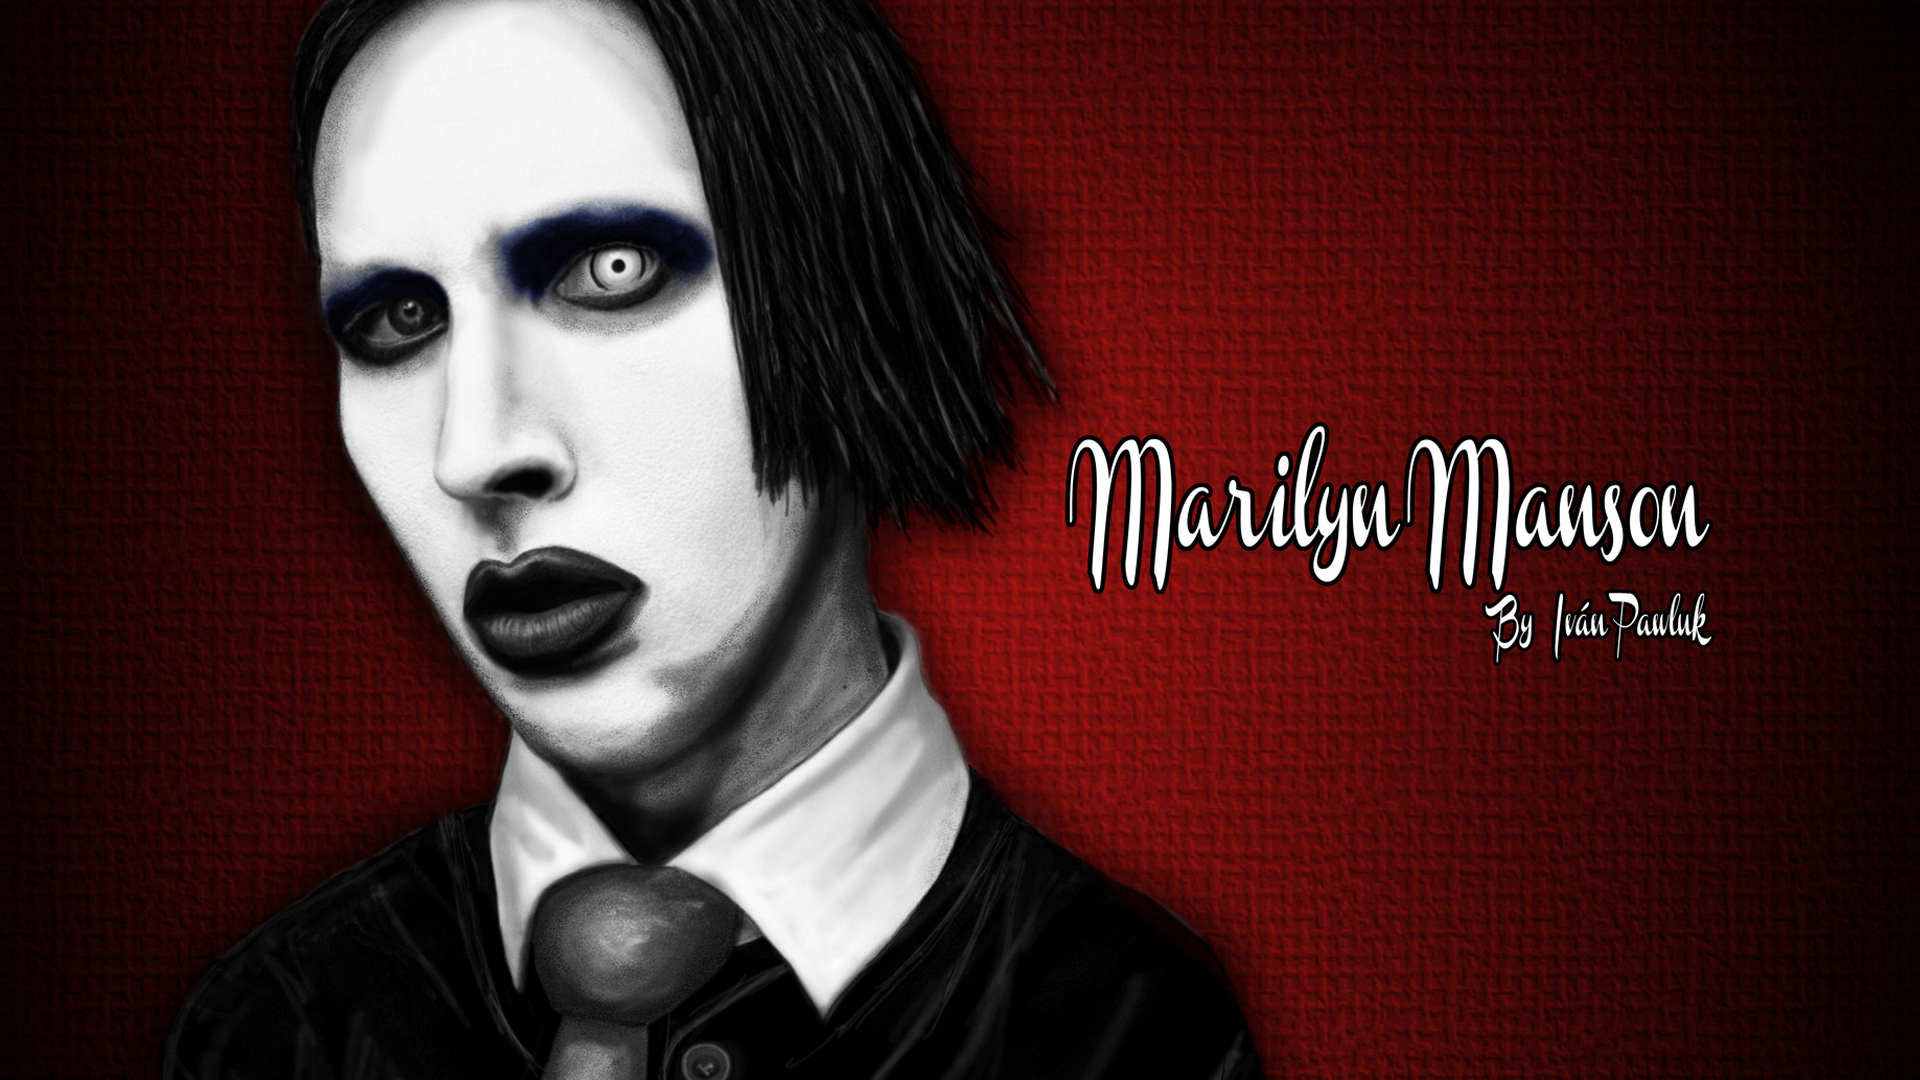 Marilyn Manson Industrial Metal Rock Heavy Shock Gothic Glam Vx